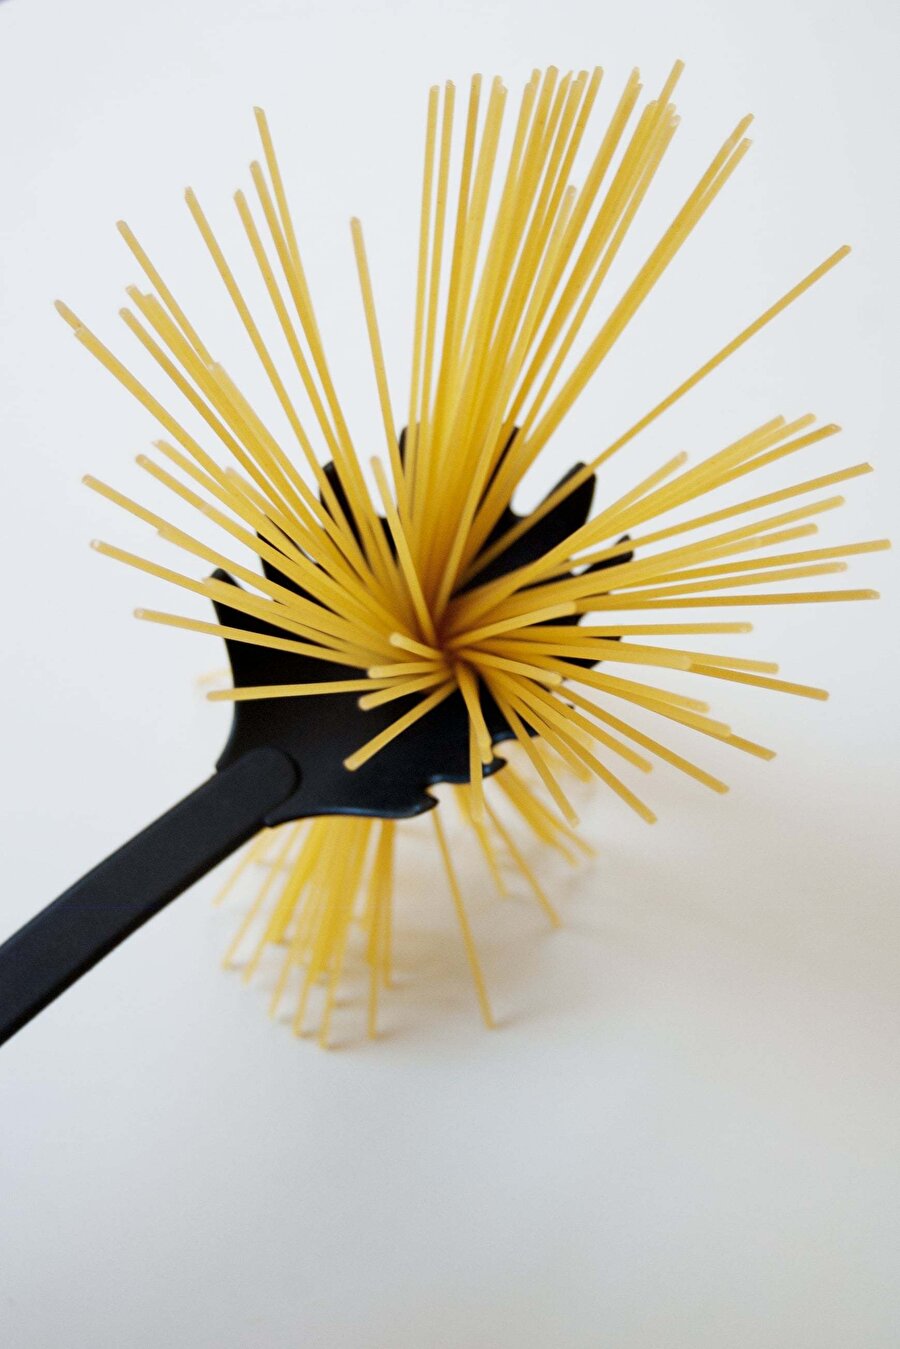 Spagetti kaşığındaki delik
Servis yapmak için kullanılan kaşıktaki bu delik, standart bir
porsiyon için gereken doğru makarna miktarını ölçmenize izin
verecek şekilde tasarlanmış.